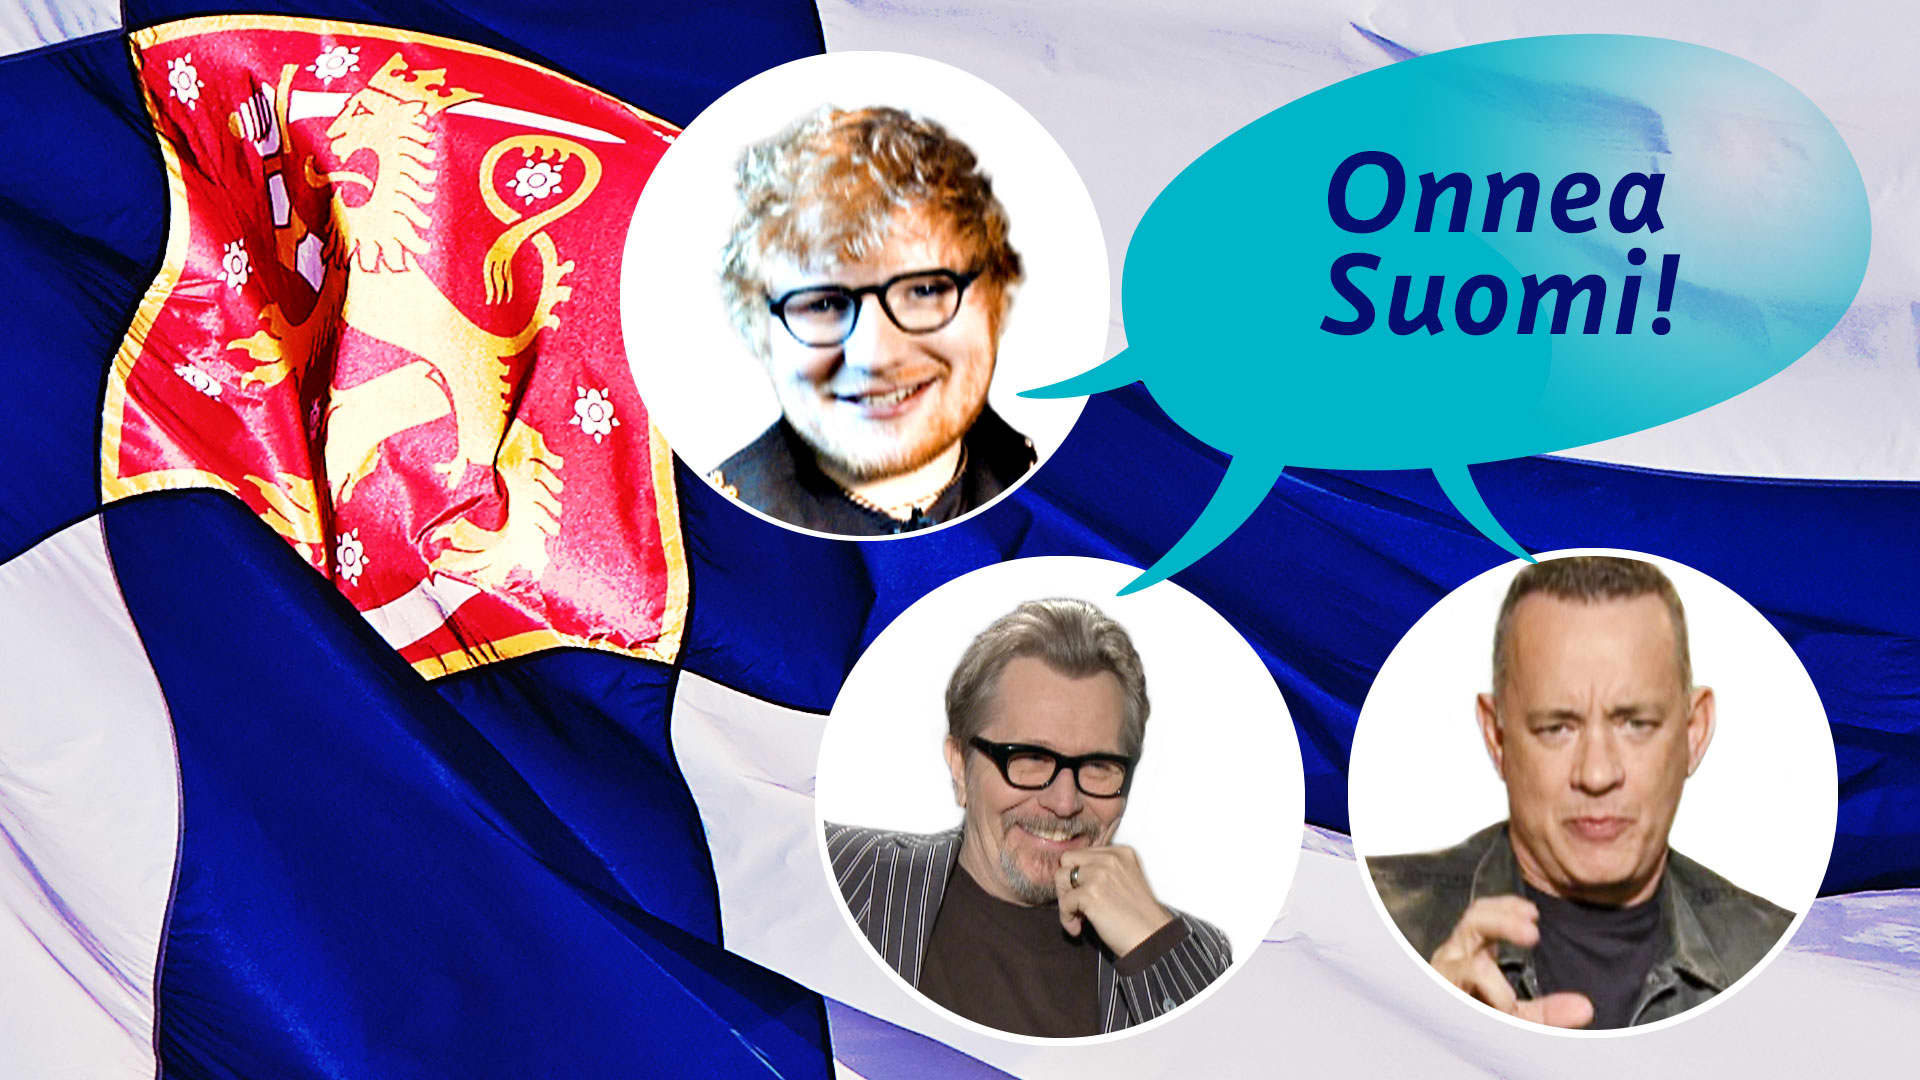 Laulaja Ed Sheeran sekä näyttelijät Gary Oldman ja Tom Hanks toivottivat Suomelle onnea monen muun kansainvälisen julkimon lisäksi.